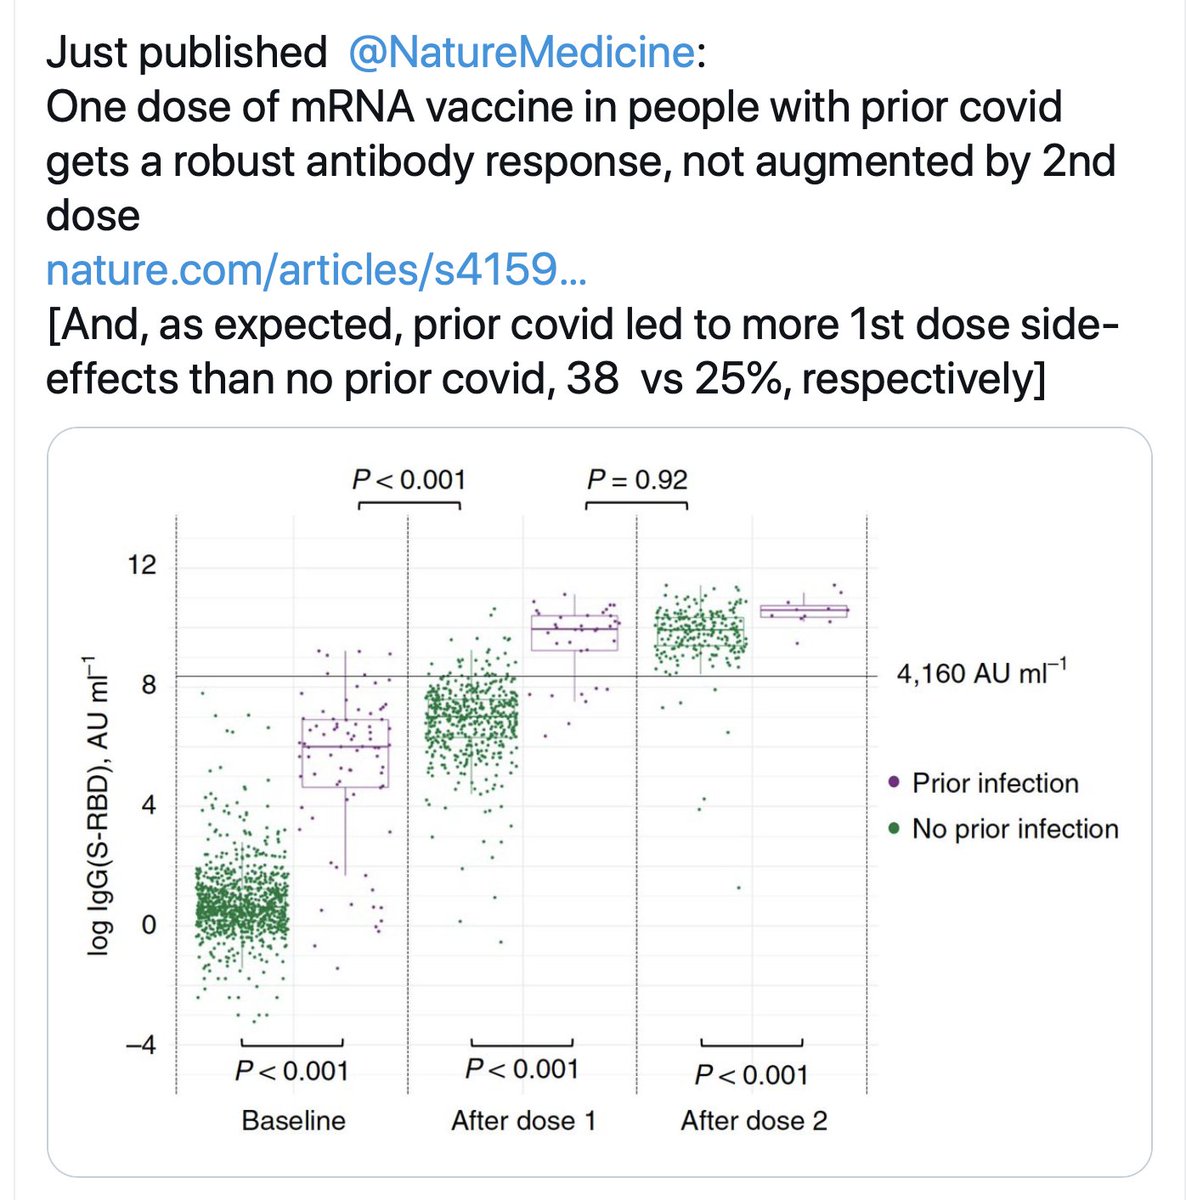 More on unnecessary side effects and action vs variants https://twitter.com/EricTopol/status/1377610365085704196 https://www.nejm.org/doi/full/10.1056/NEJMc2103825